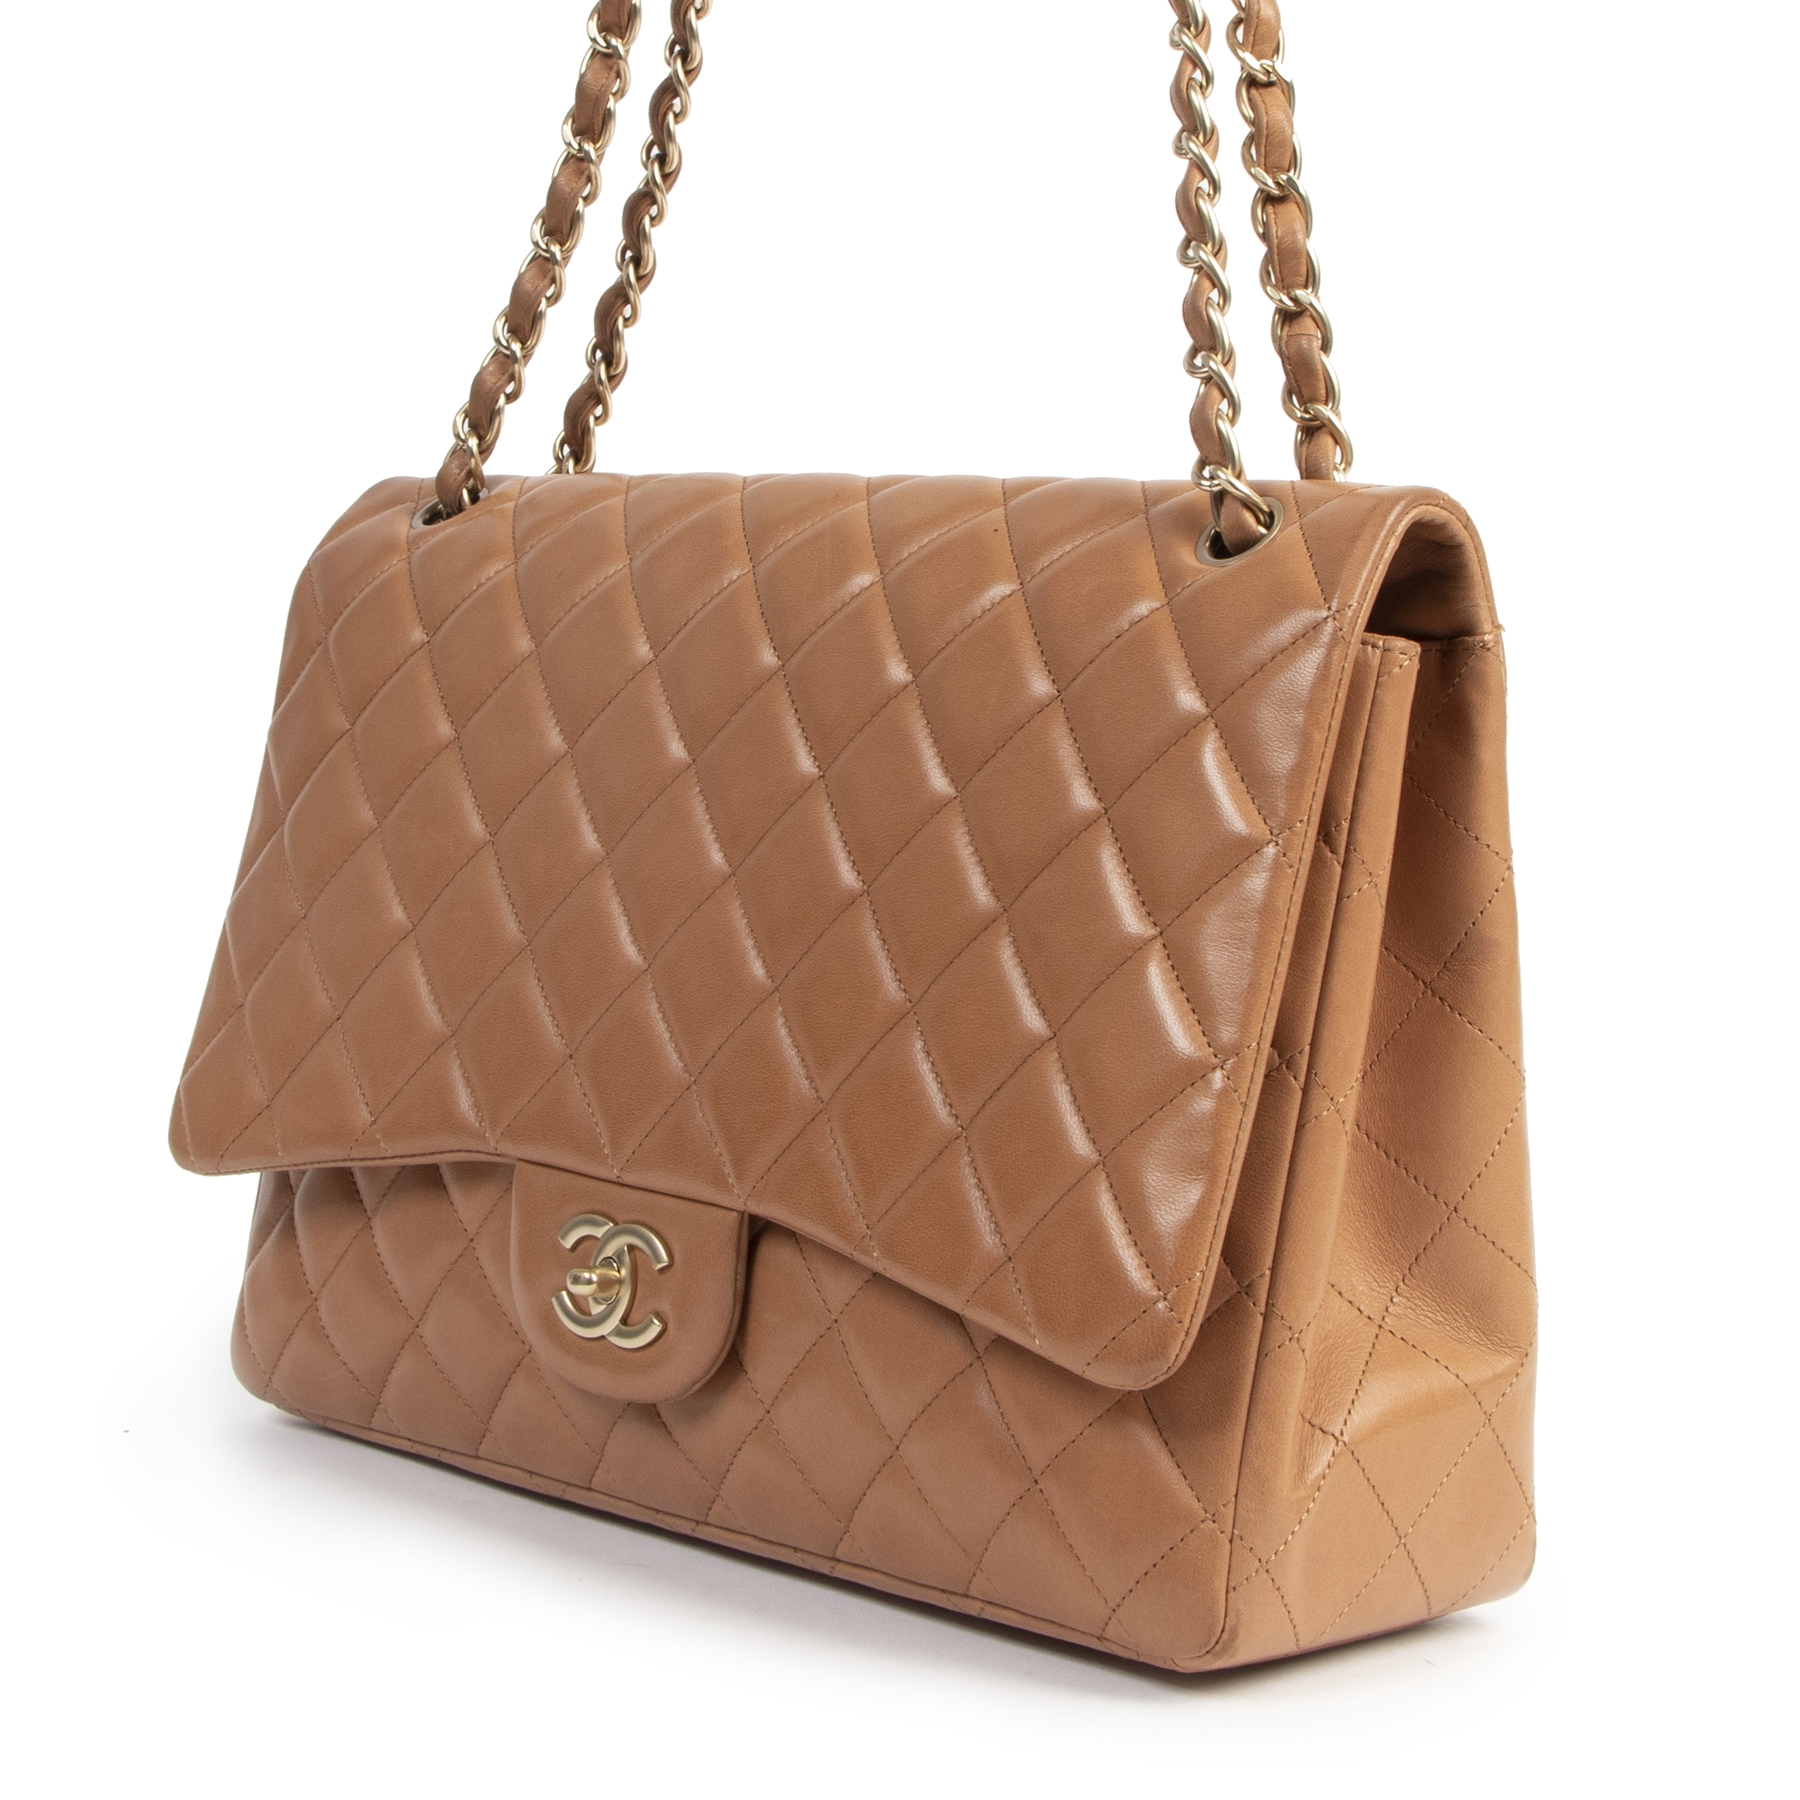 Chanel Camel Handbag - 15 For Sale on 1stDibs  camel tote meaning, camel  tones meaning, chanel camel bag